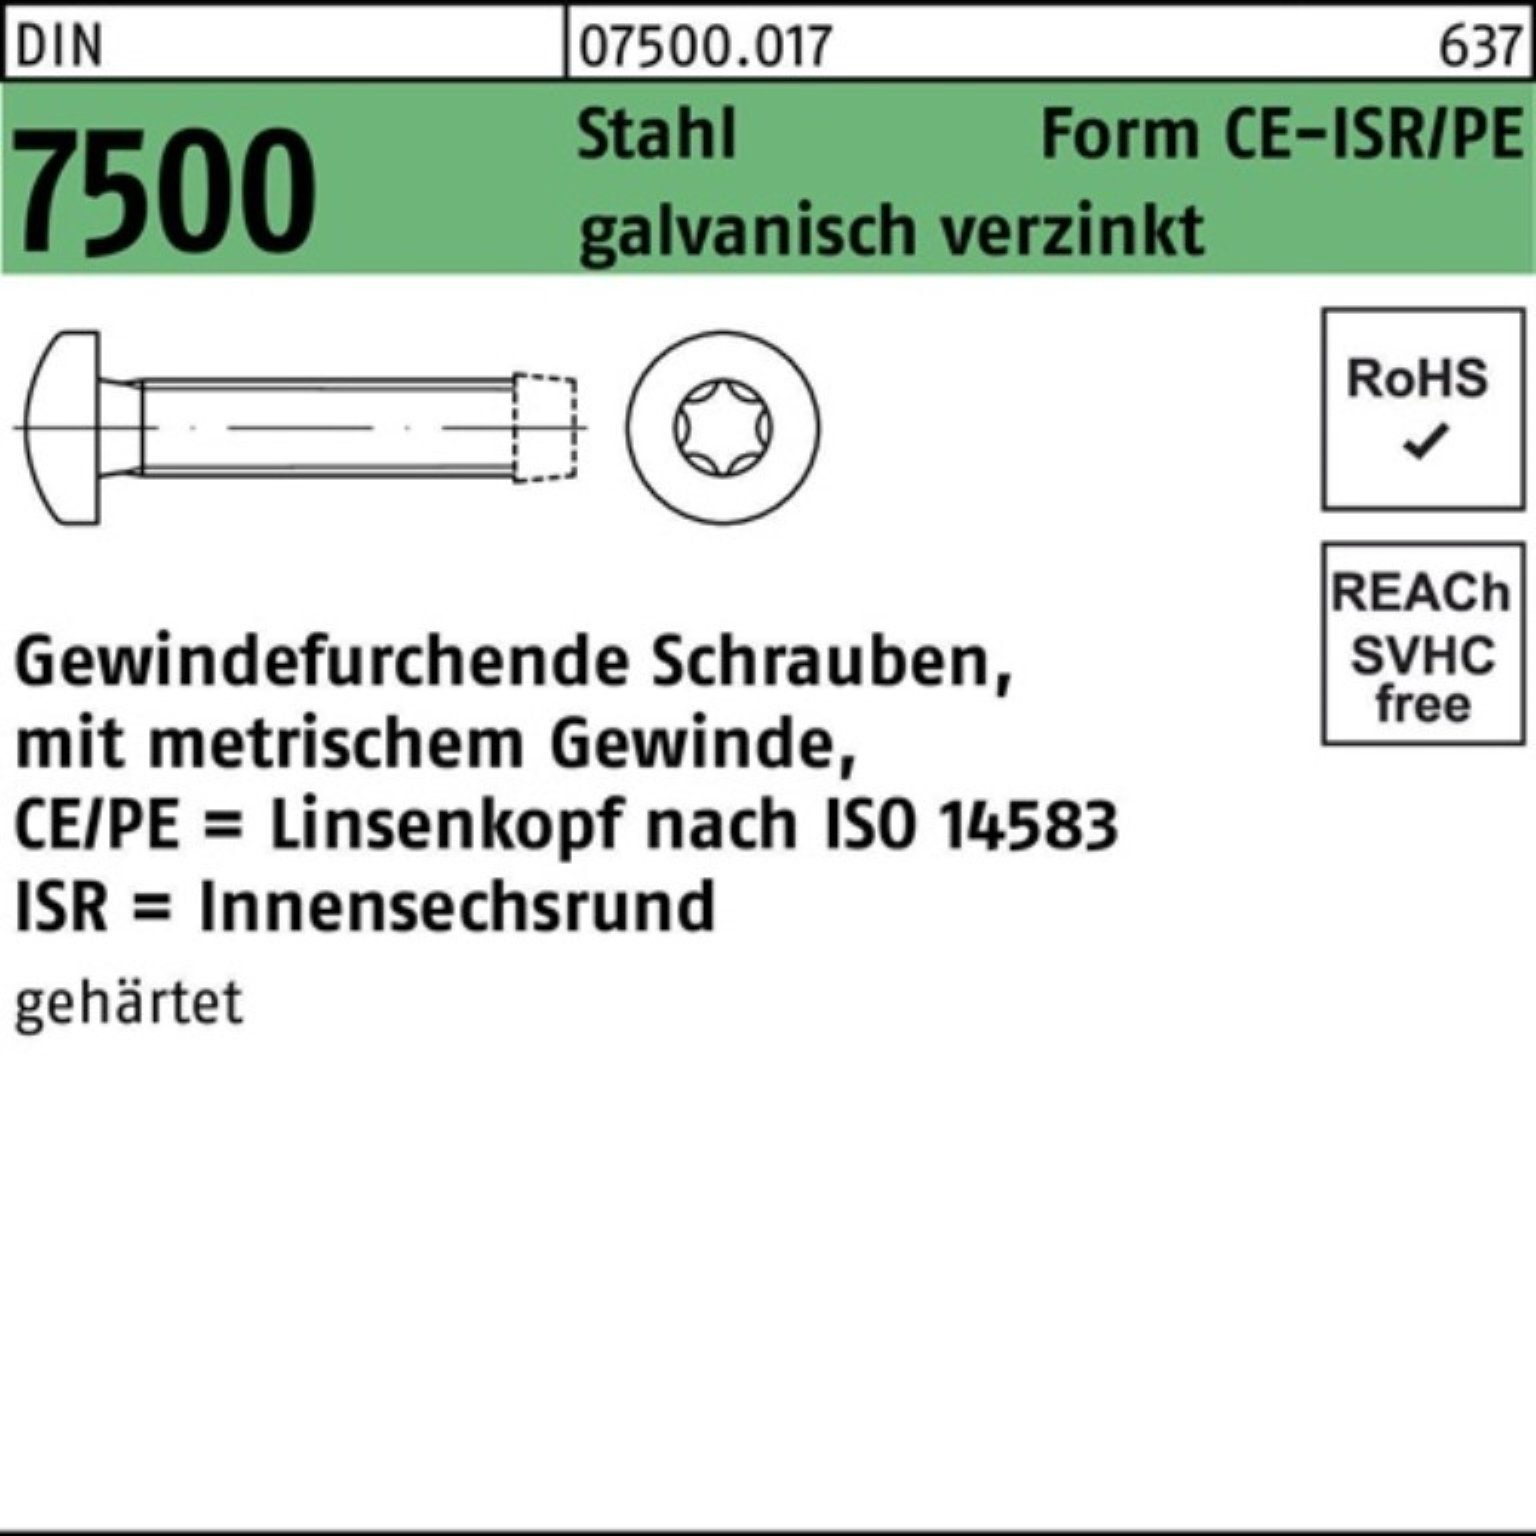 Sta CEM Pack 7500 Reyher Gewindeschraube 1000er DIN ISR LIKO Gewindefurchendeschraube 3x4-T10